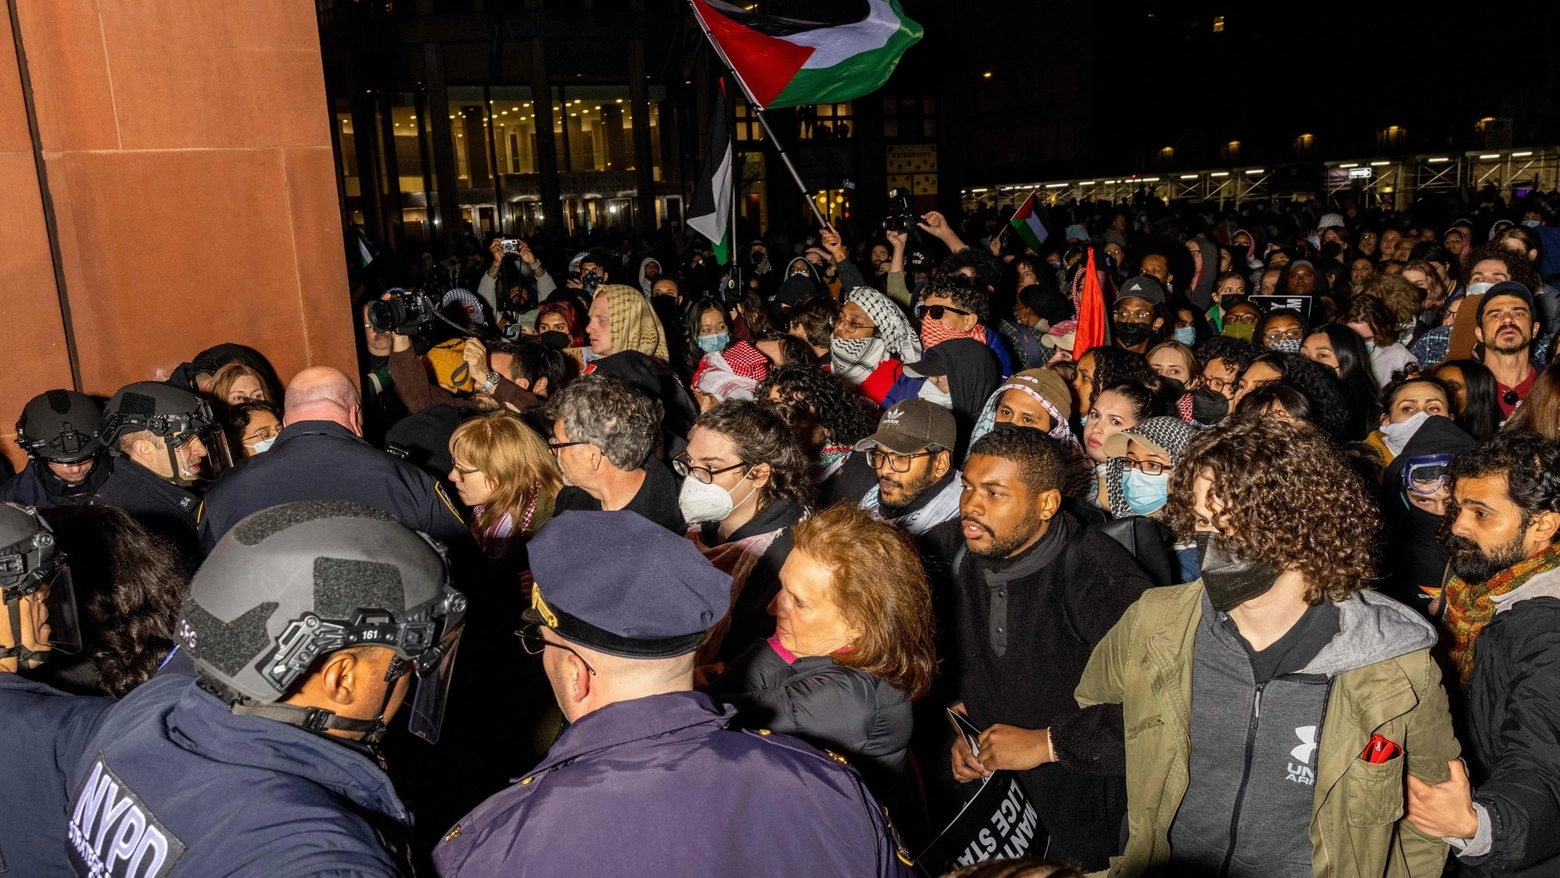 Manifestazioni studentesche da Yale a Berkeley, caos e scontri. Alla Columbia, epicentro delle tensioni, le lezioni in presenza sono state sospese. Tanti i professori schierati con i ragazzi. “Condanno le iniziative antisemite – ha detto Biden – ma anche chi non capisce quello che sta accade ai palestinesi”